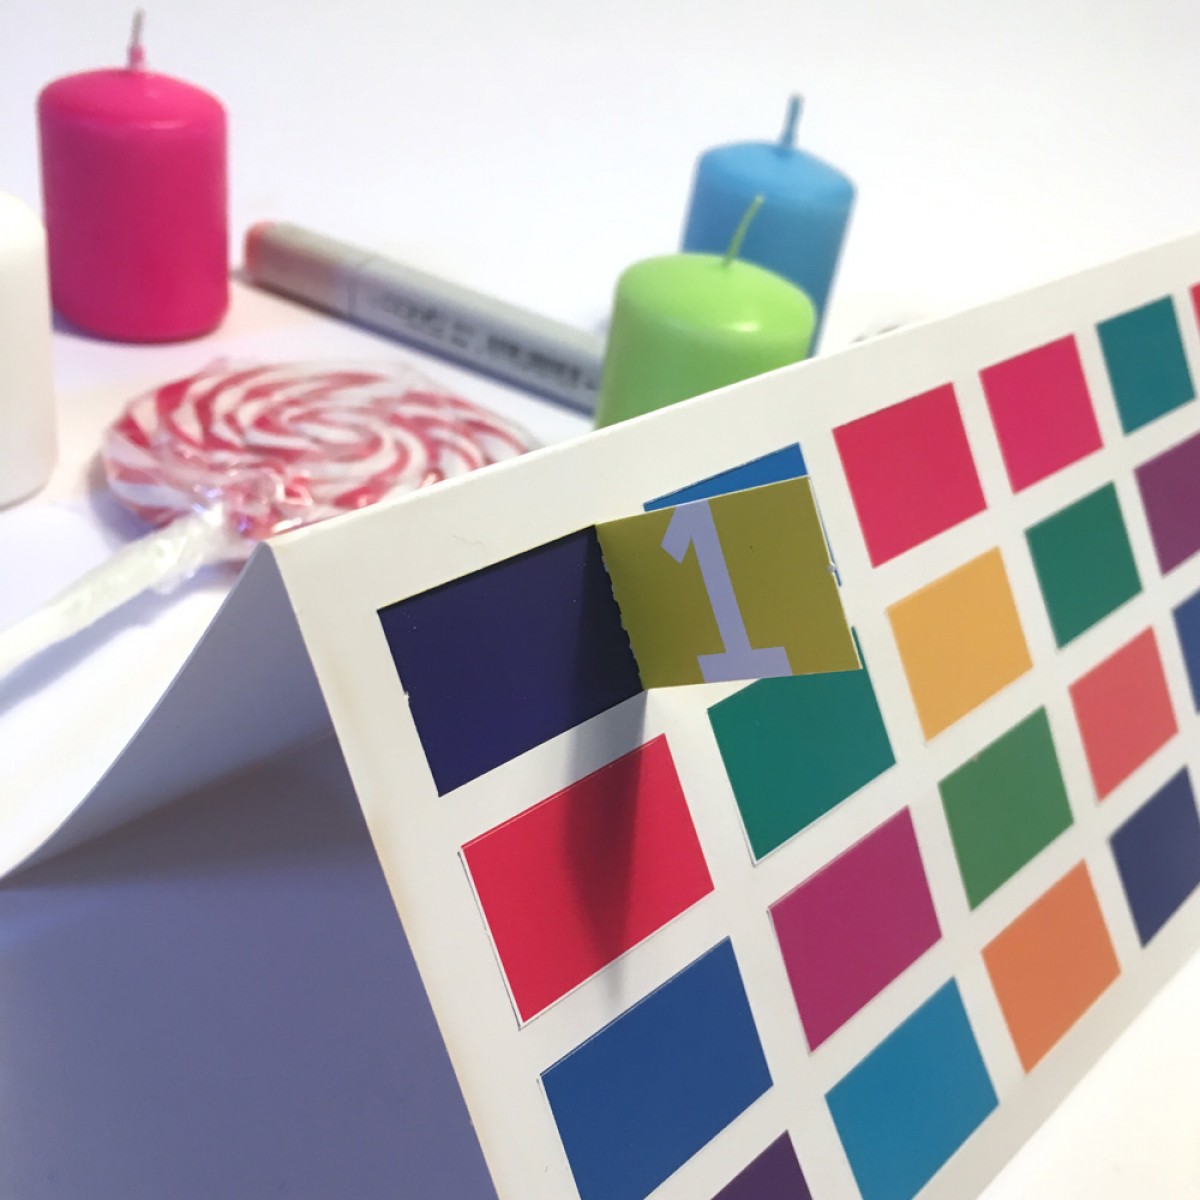 FORMLOS Berlin Adventskalender mit Komplementär-Farben – finde die richtige Farbe!